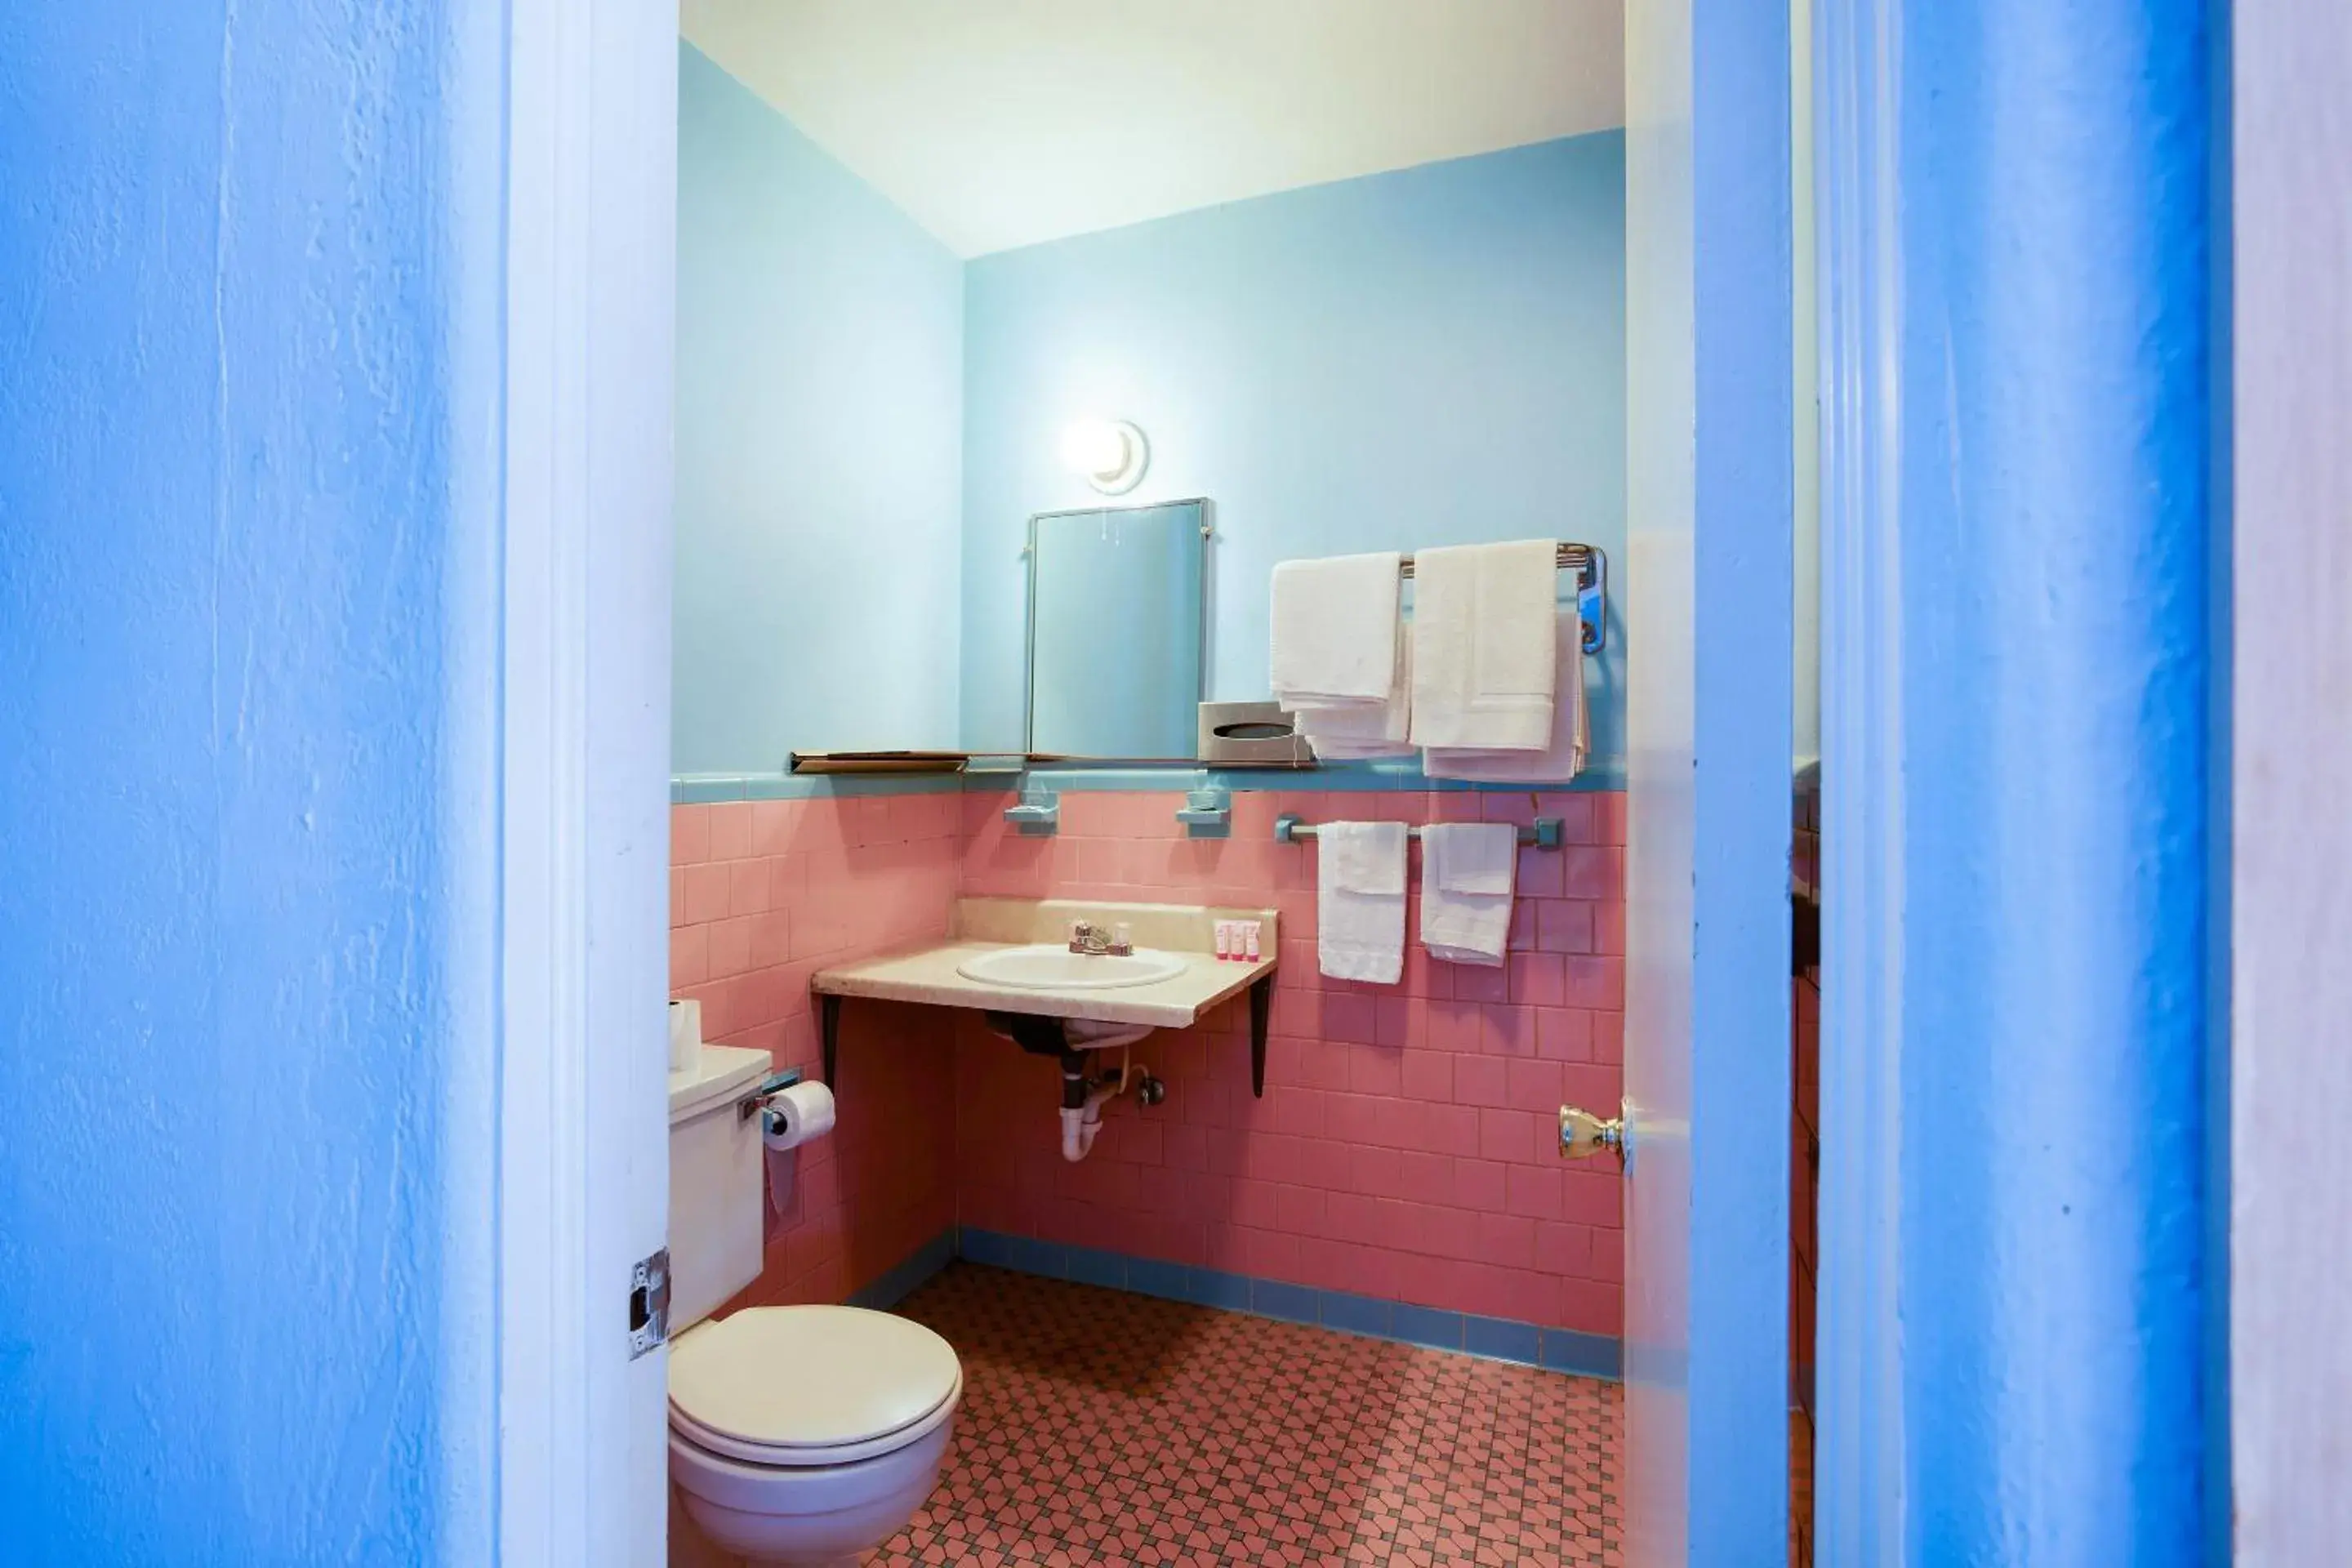 Bathroom in OYO Hotel Salem-Roanoke I-81